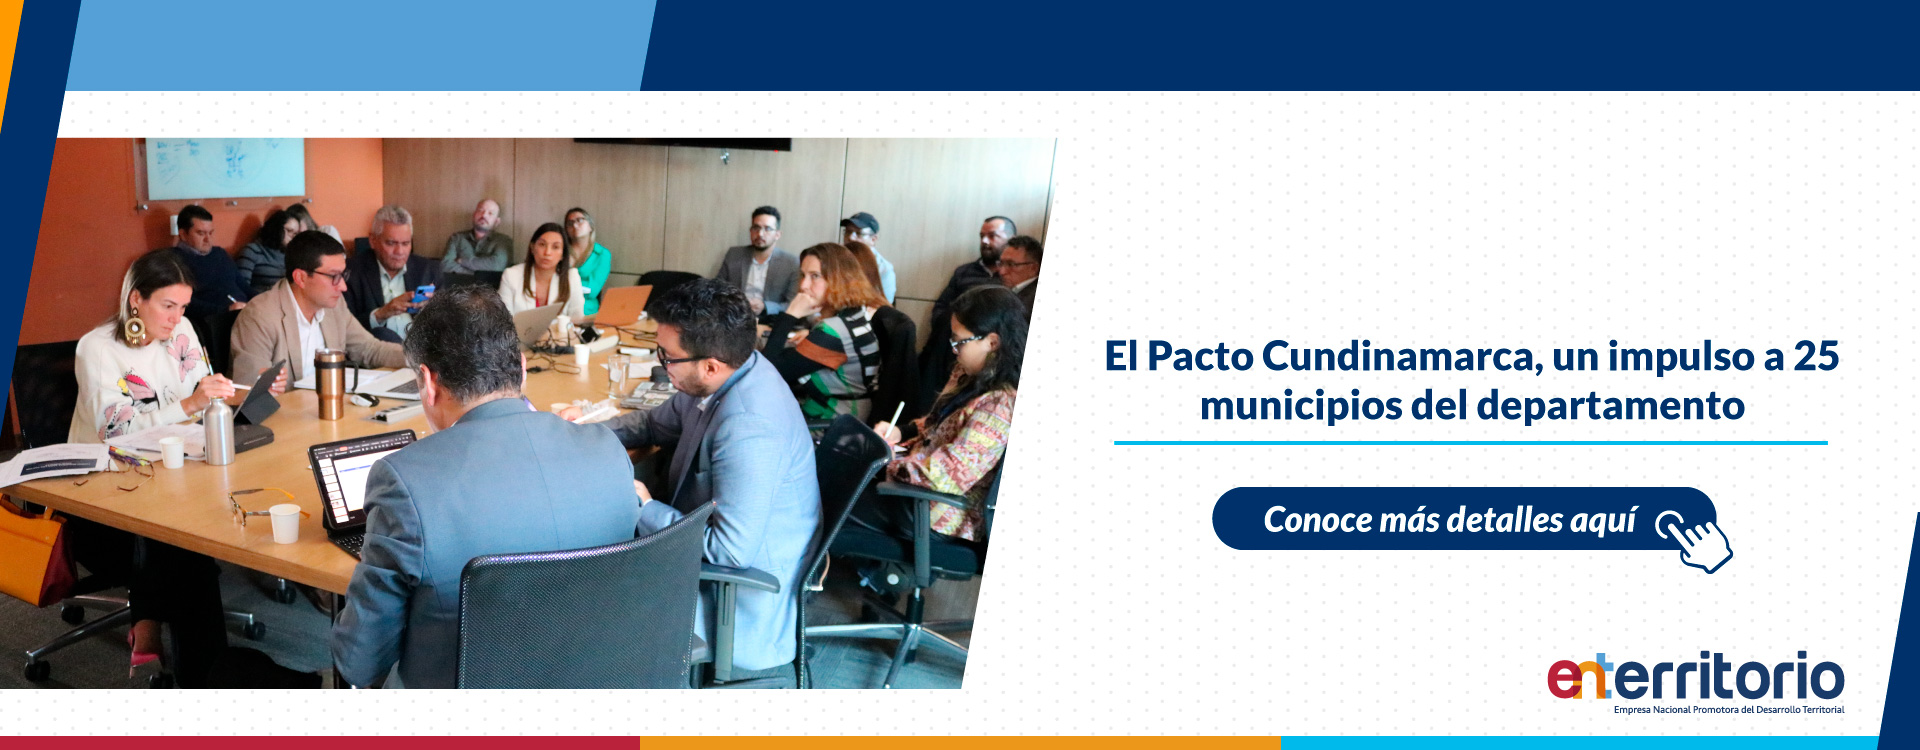 El Pacto Cundinamarca, un impulso a 25 municipios del departamento